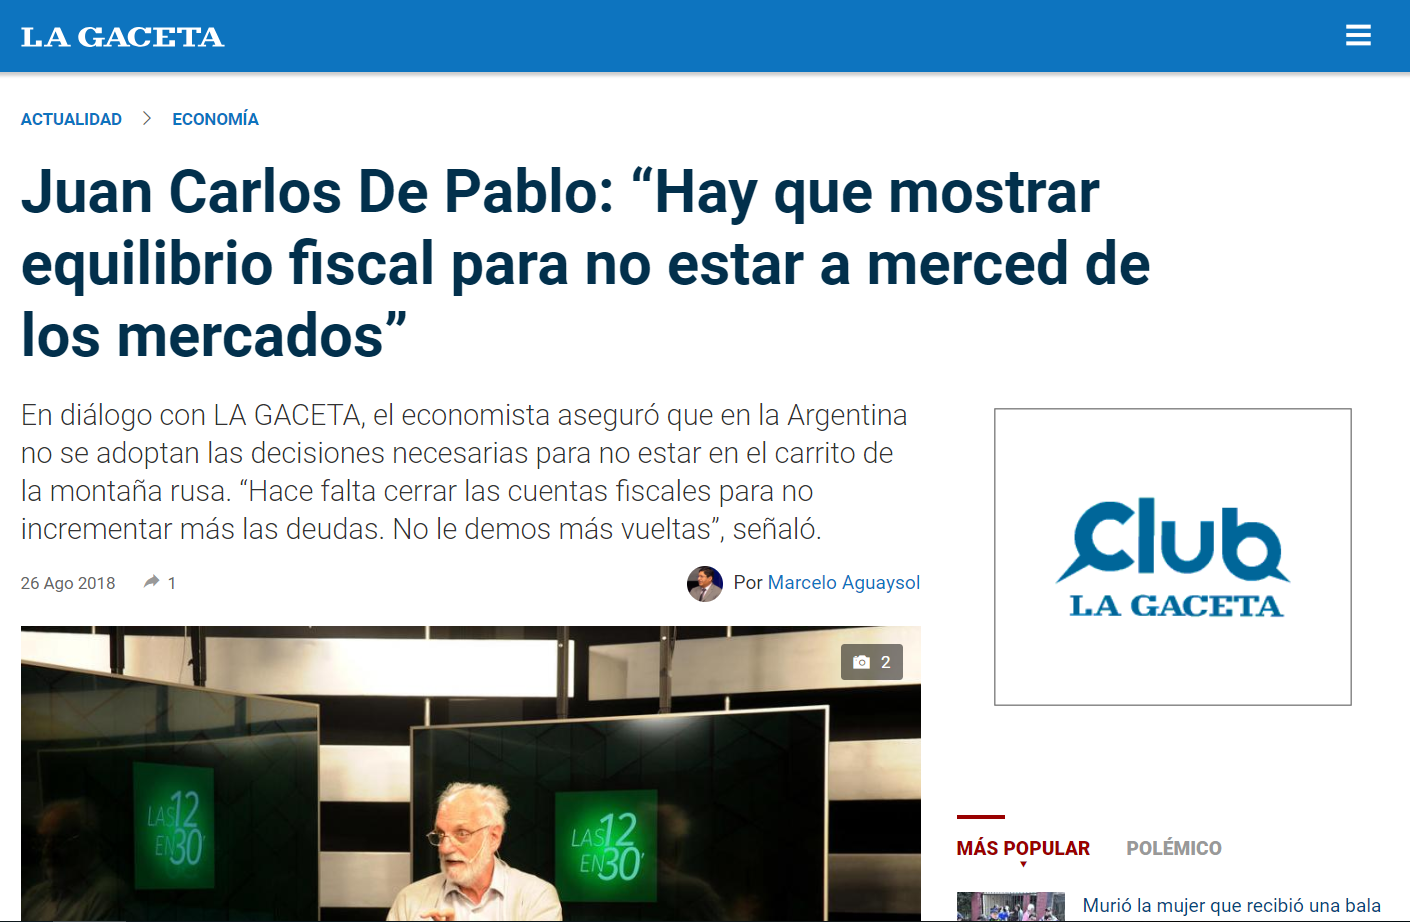 Juan Carlos De Pablo: “Hay que mostrar equilibrio fiscal para no estar a merced de los mercados”